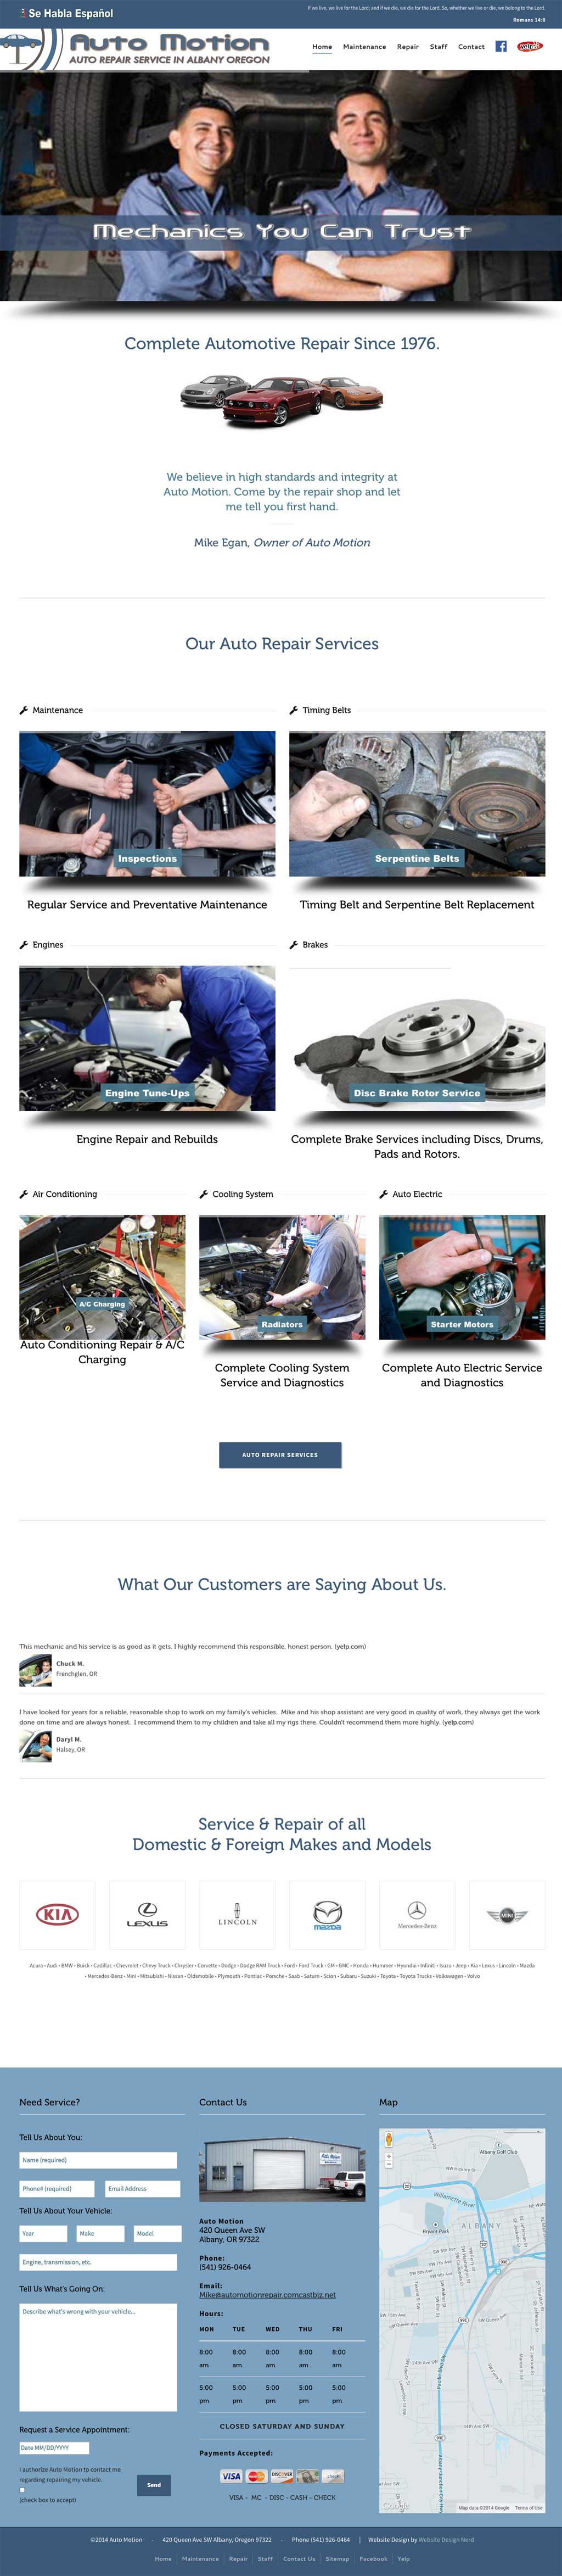 Albany Auto Repair Web Design Services